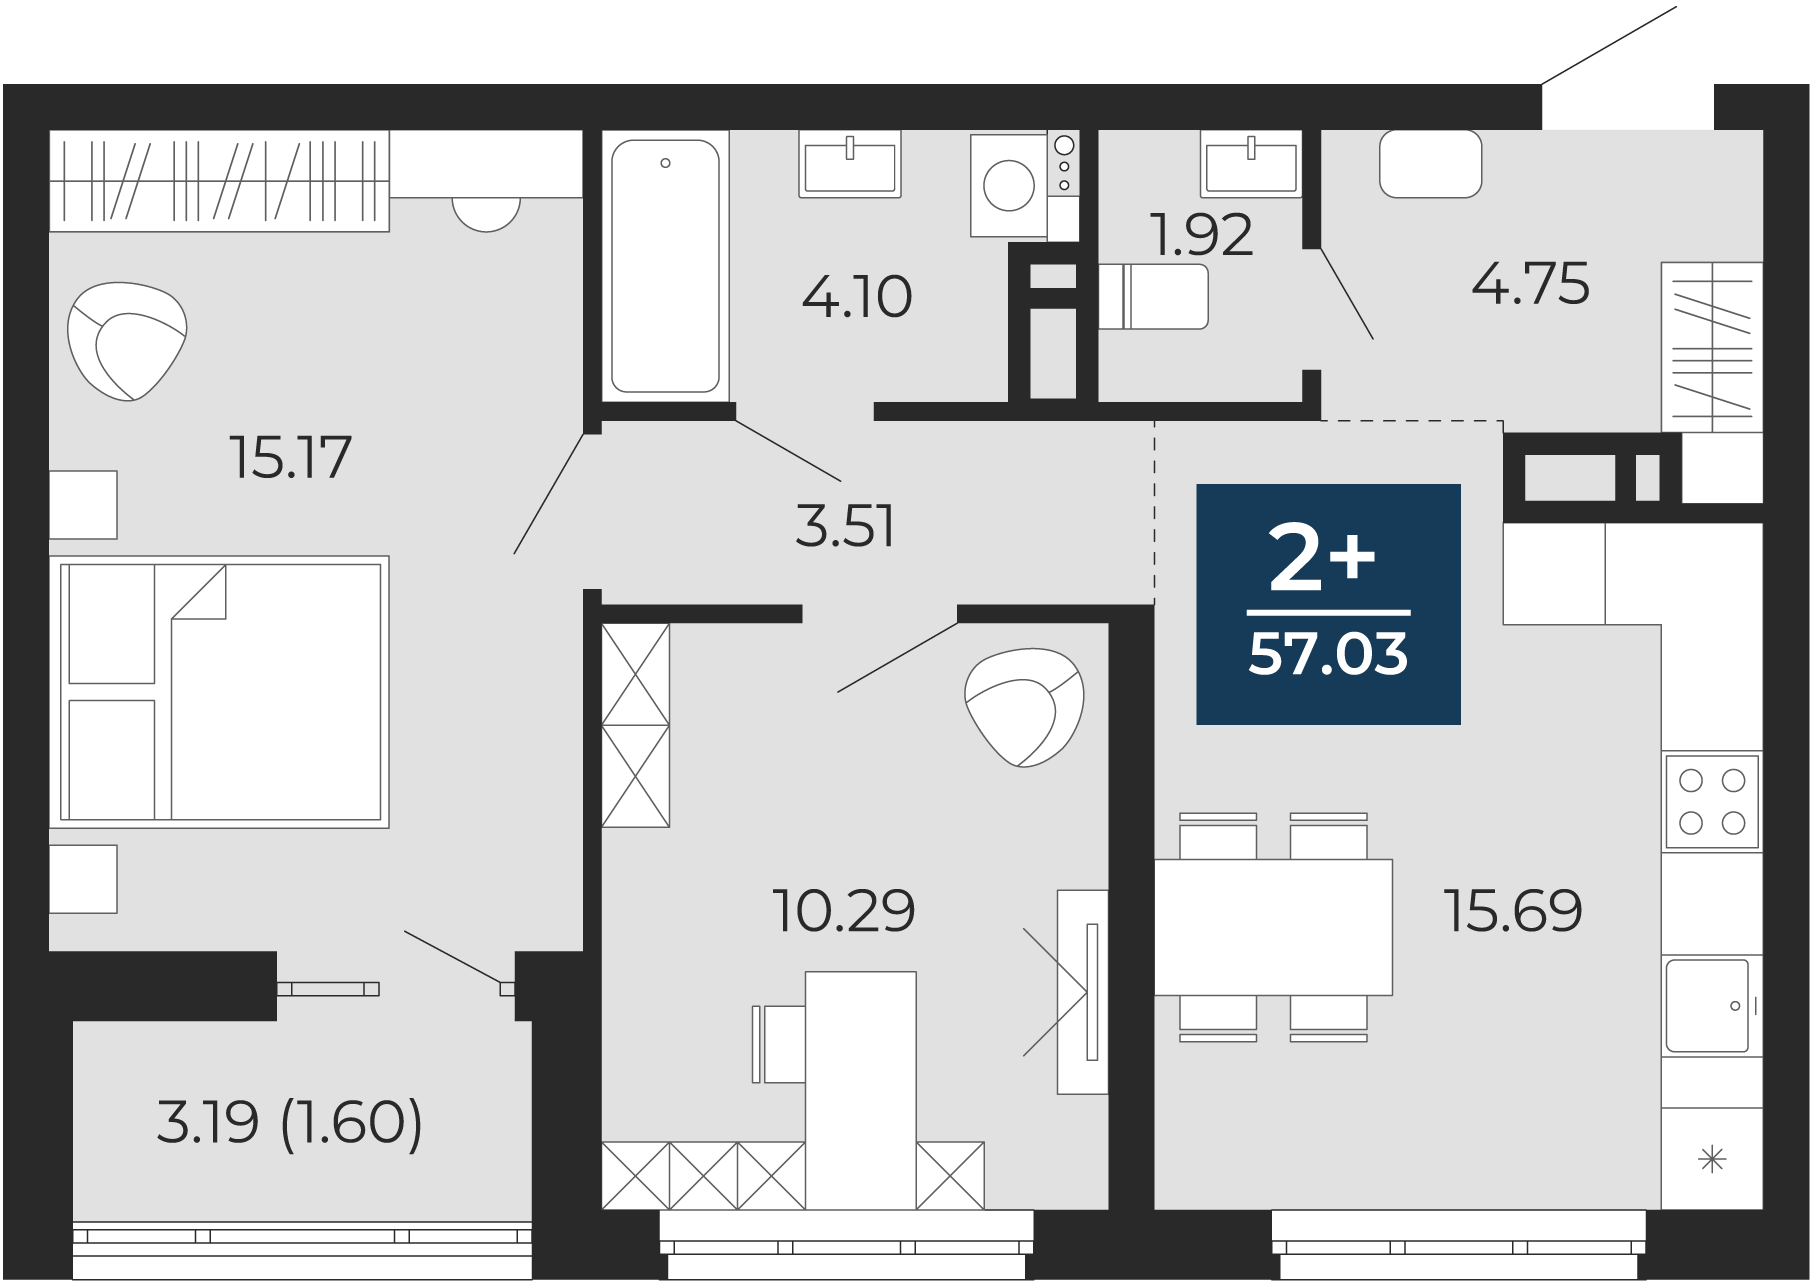 Квартира № 413, 2-комнатная, 57.03 кв. м, 12 этаж